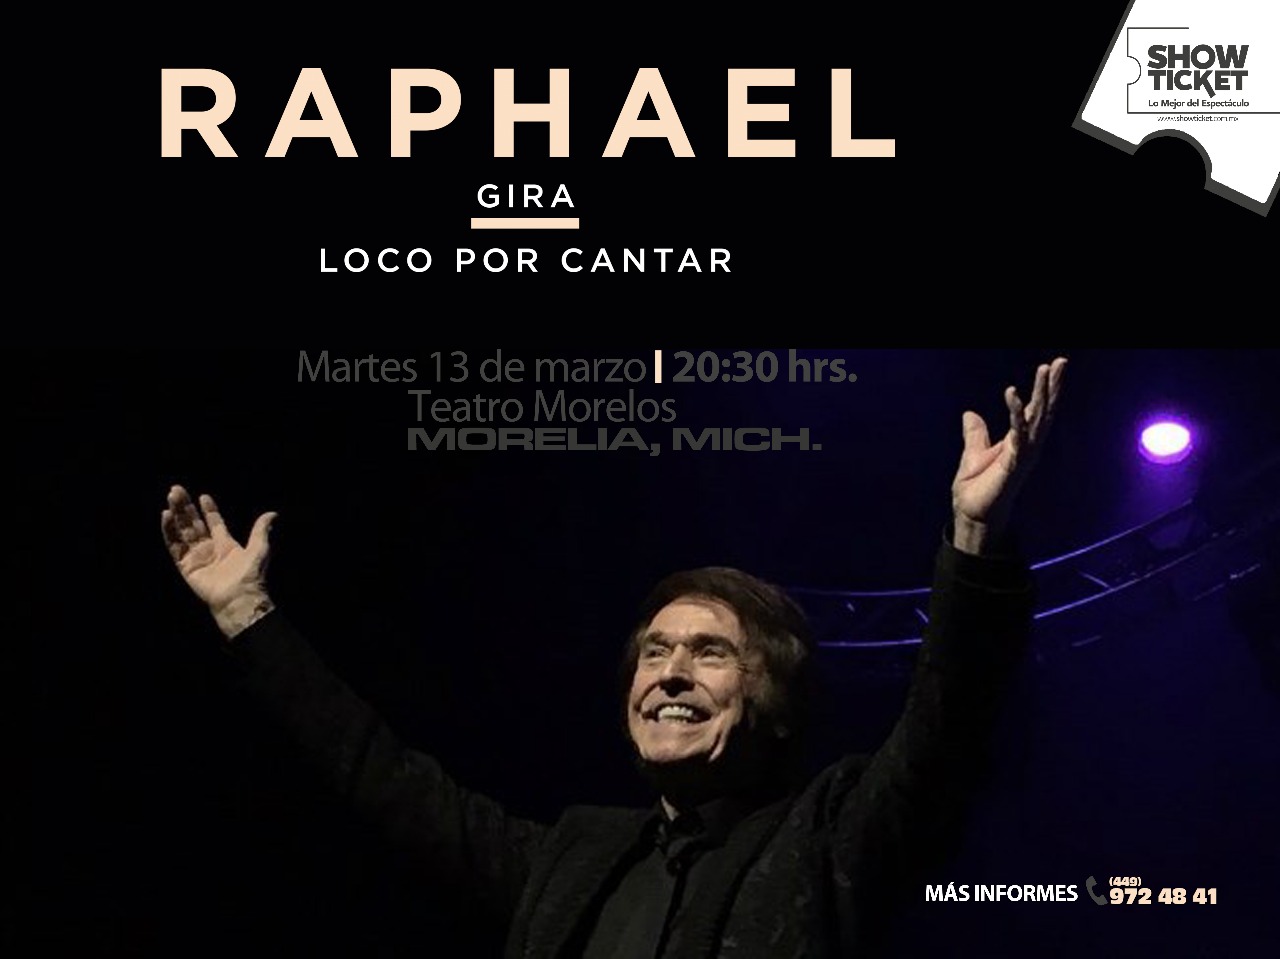  Raphael llegará a Morelia en marzo con su Tour “Loco por cantar”